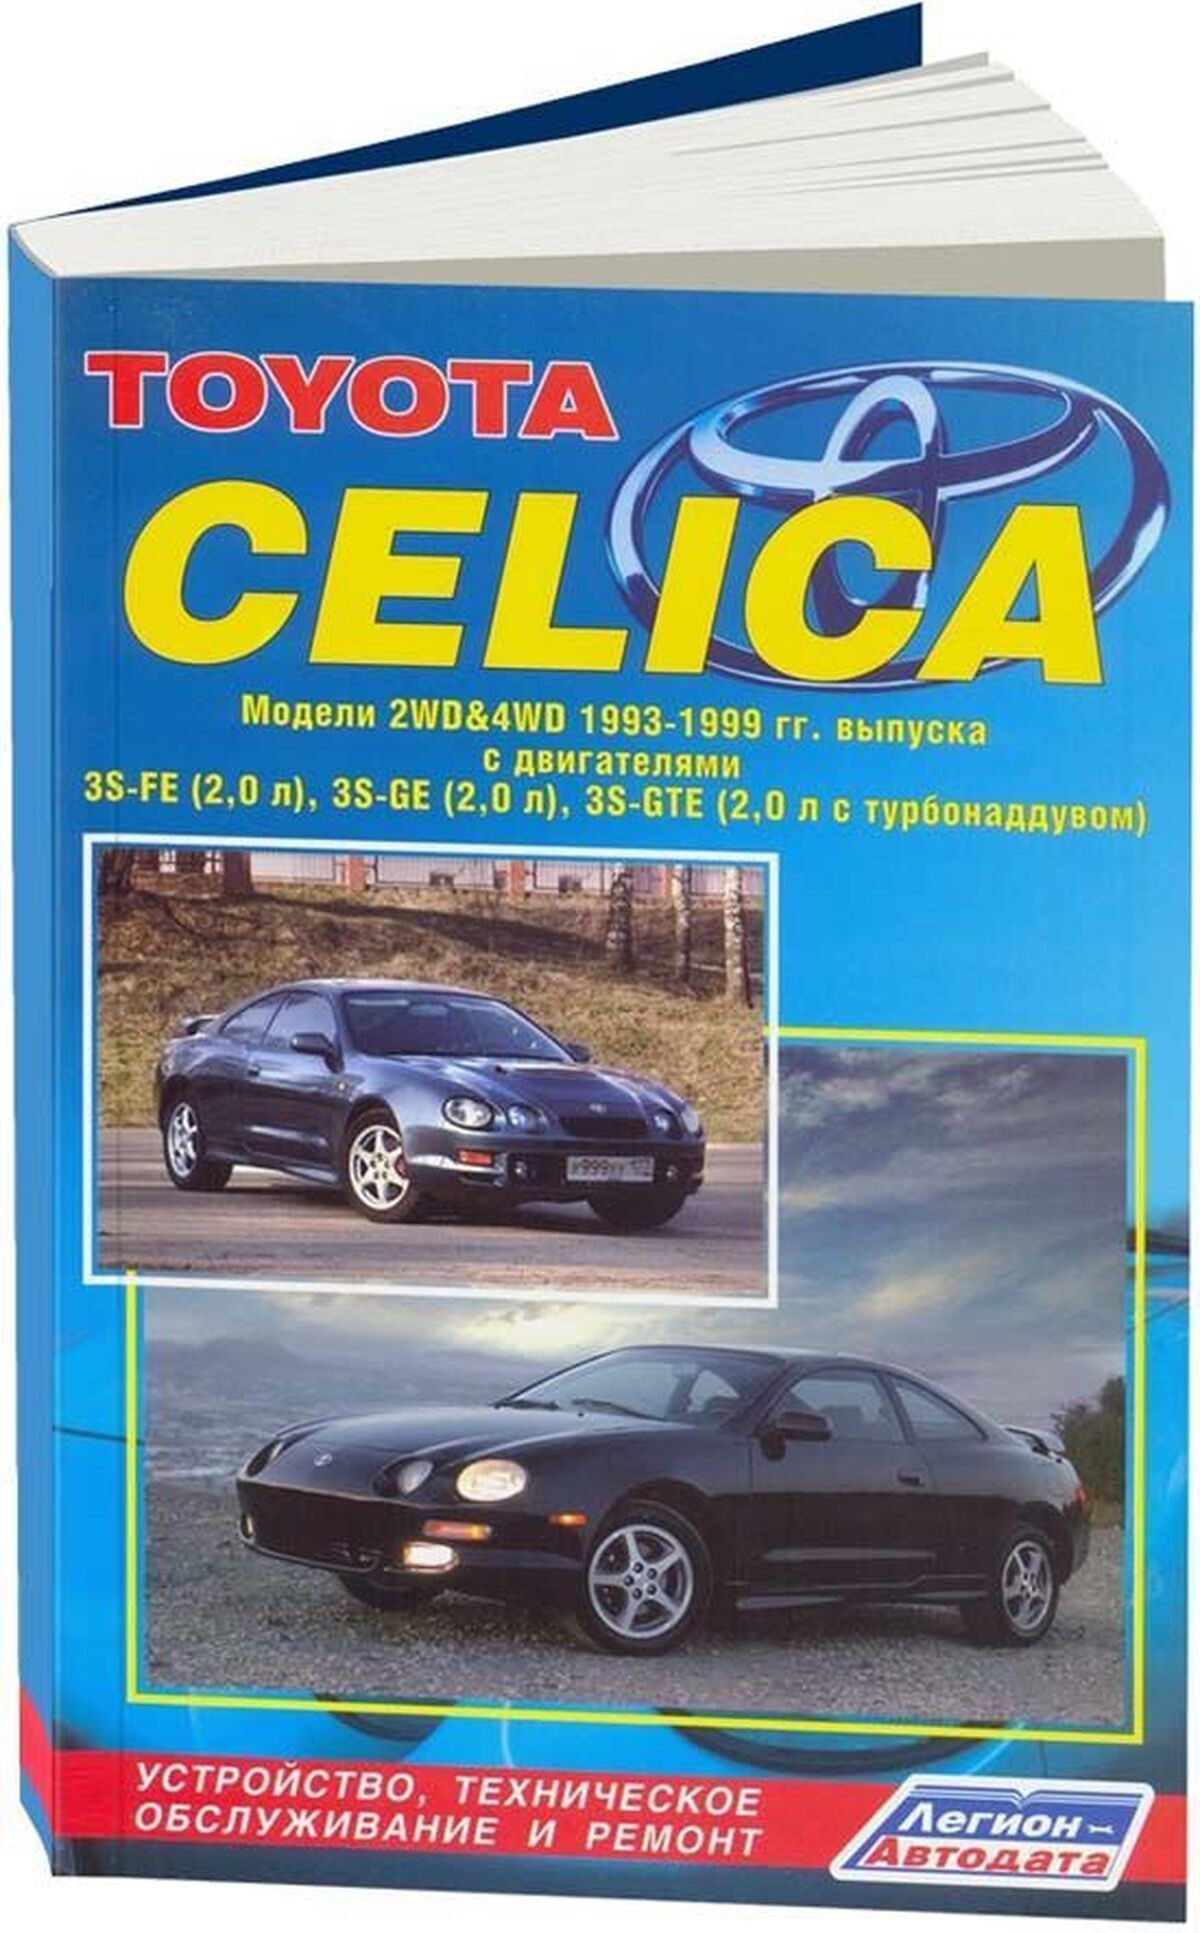 Книга: TOYOTA CELICA (б) 1993-1999 г.в., рем., экспл., то | Легион-Aвтодата